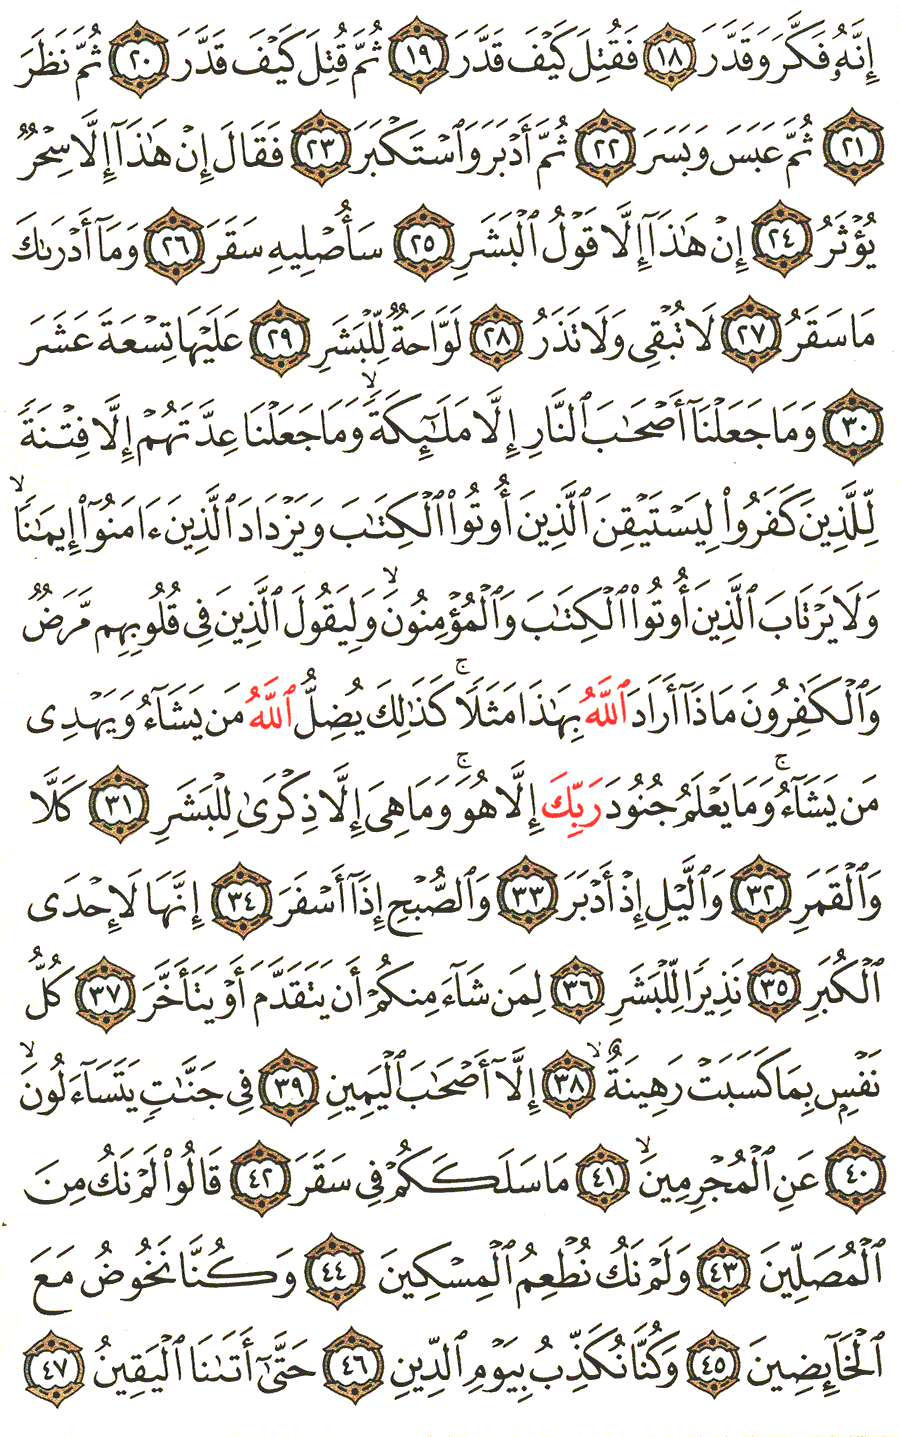 الصفحة رقم 576 من القرآن الكريم مكتوبة من المصحف